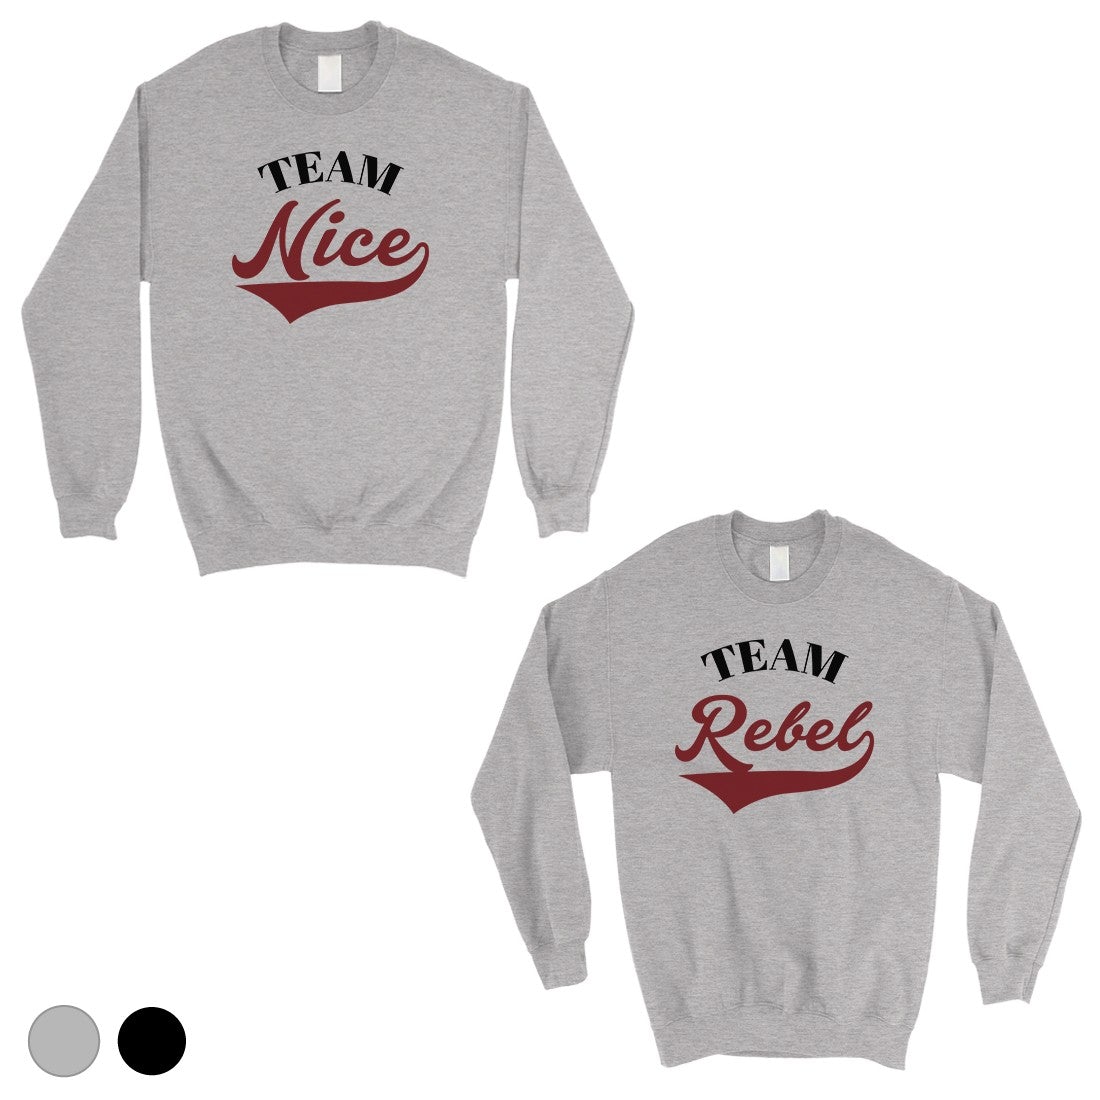 Team Nice Team Rebel Cute Christmas Sweatshirts Best Friends Gifts Gray